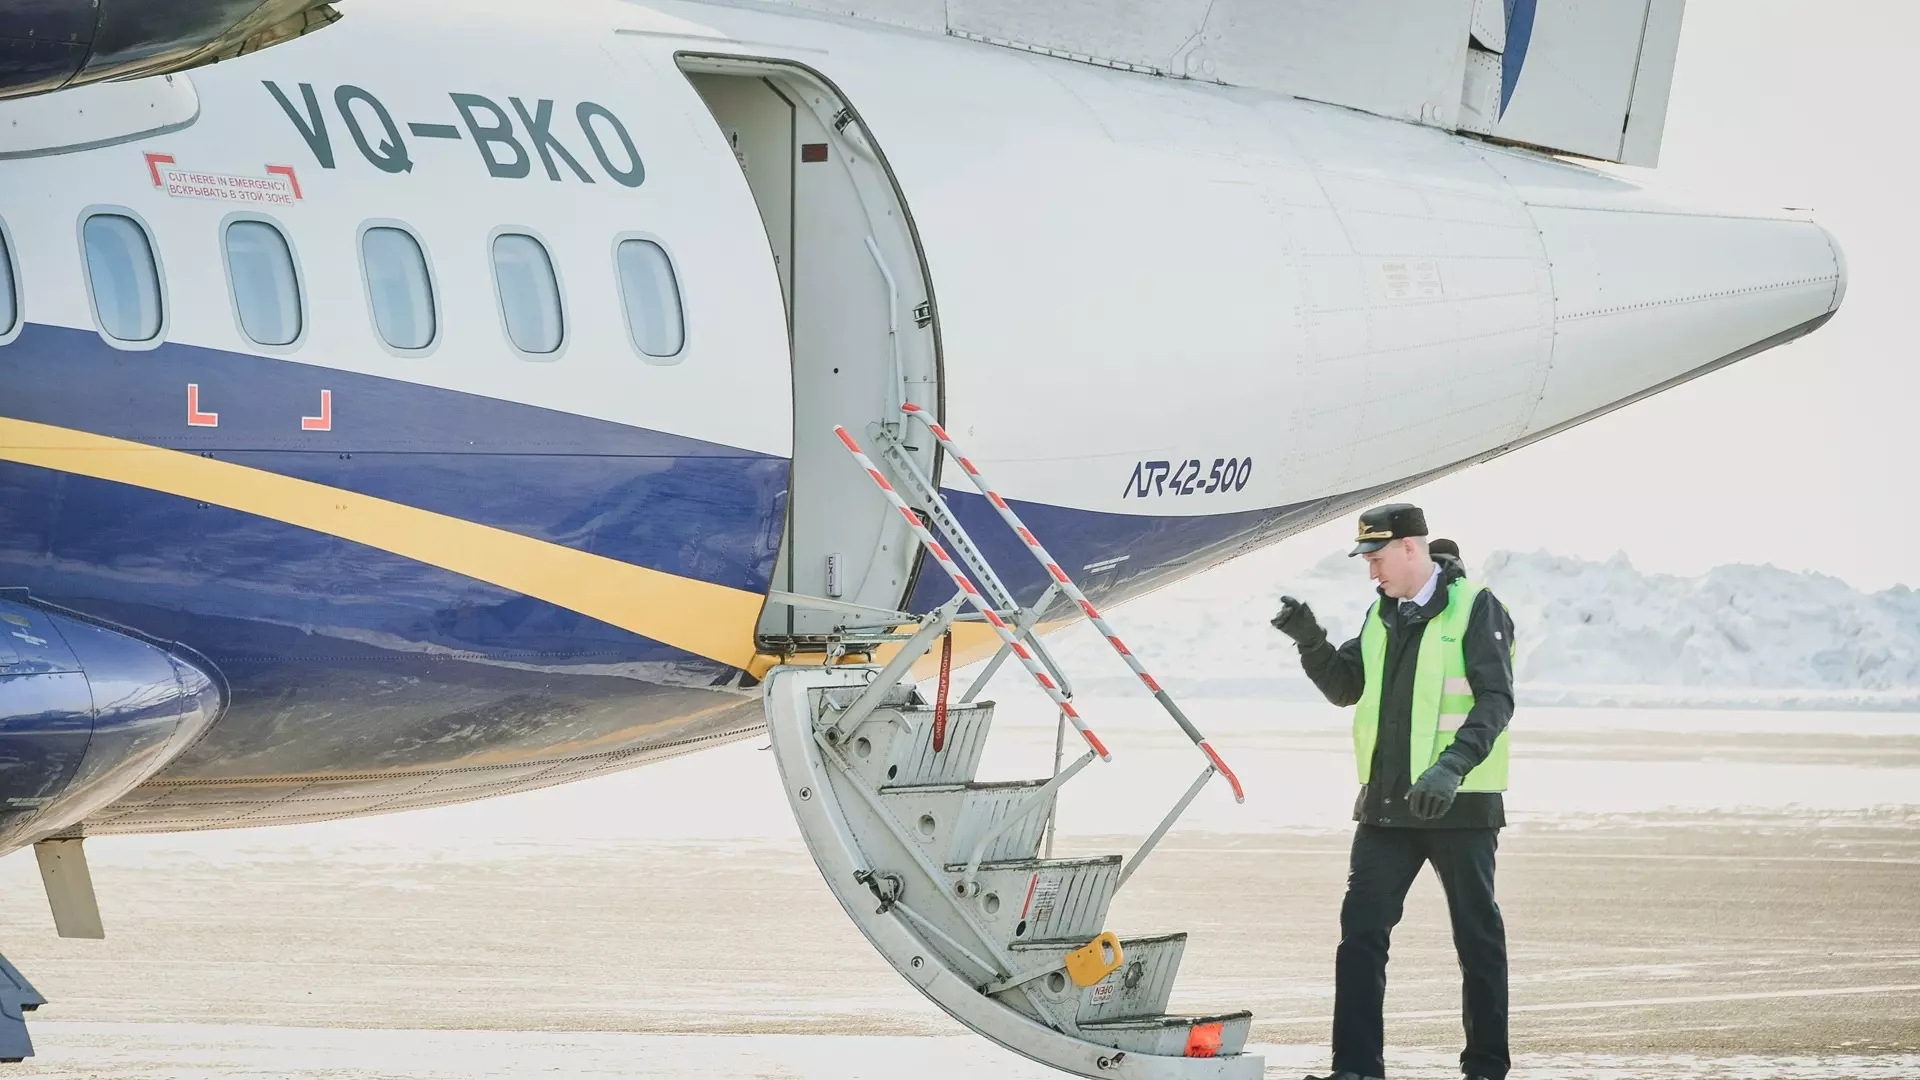 Рейс из Уфы в Красноярск был задержан на 8 часов по технической причине